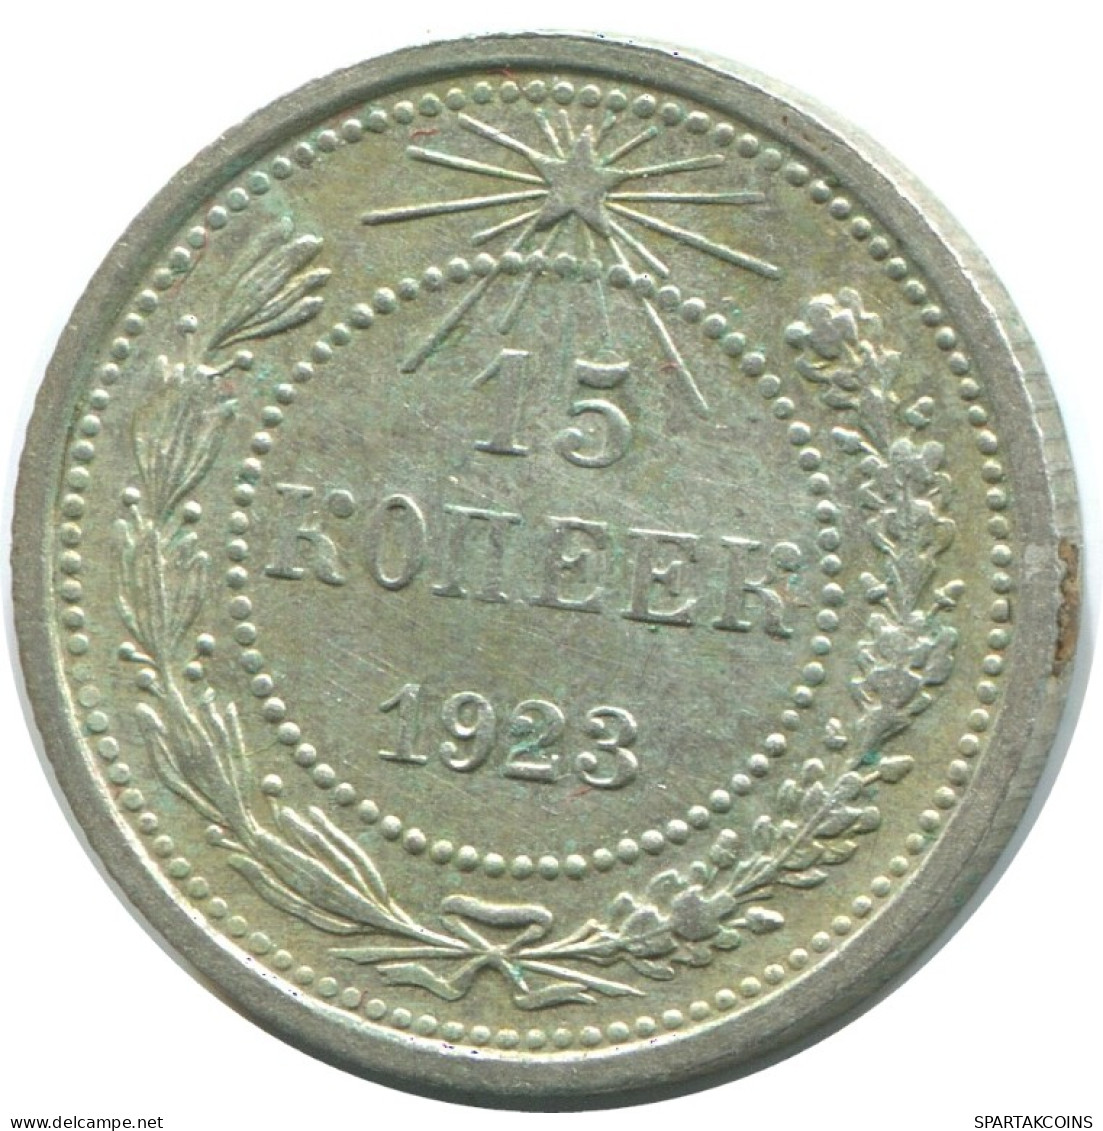 15 KOPEKS 1923 RUSSIA RSFSR SILVER Coin HIGH GRADE #AF021.4.U.A - Russland